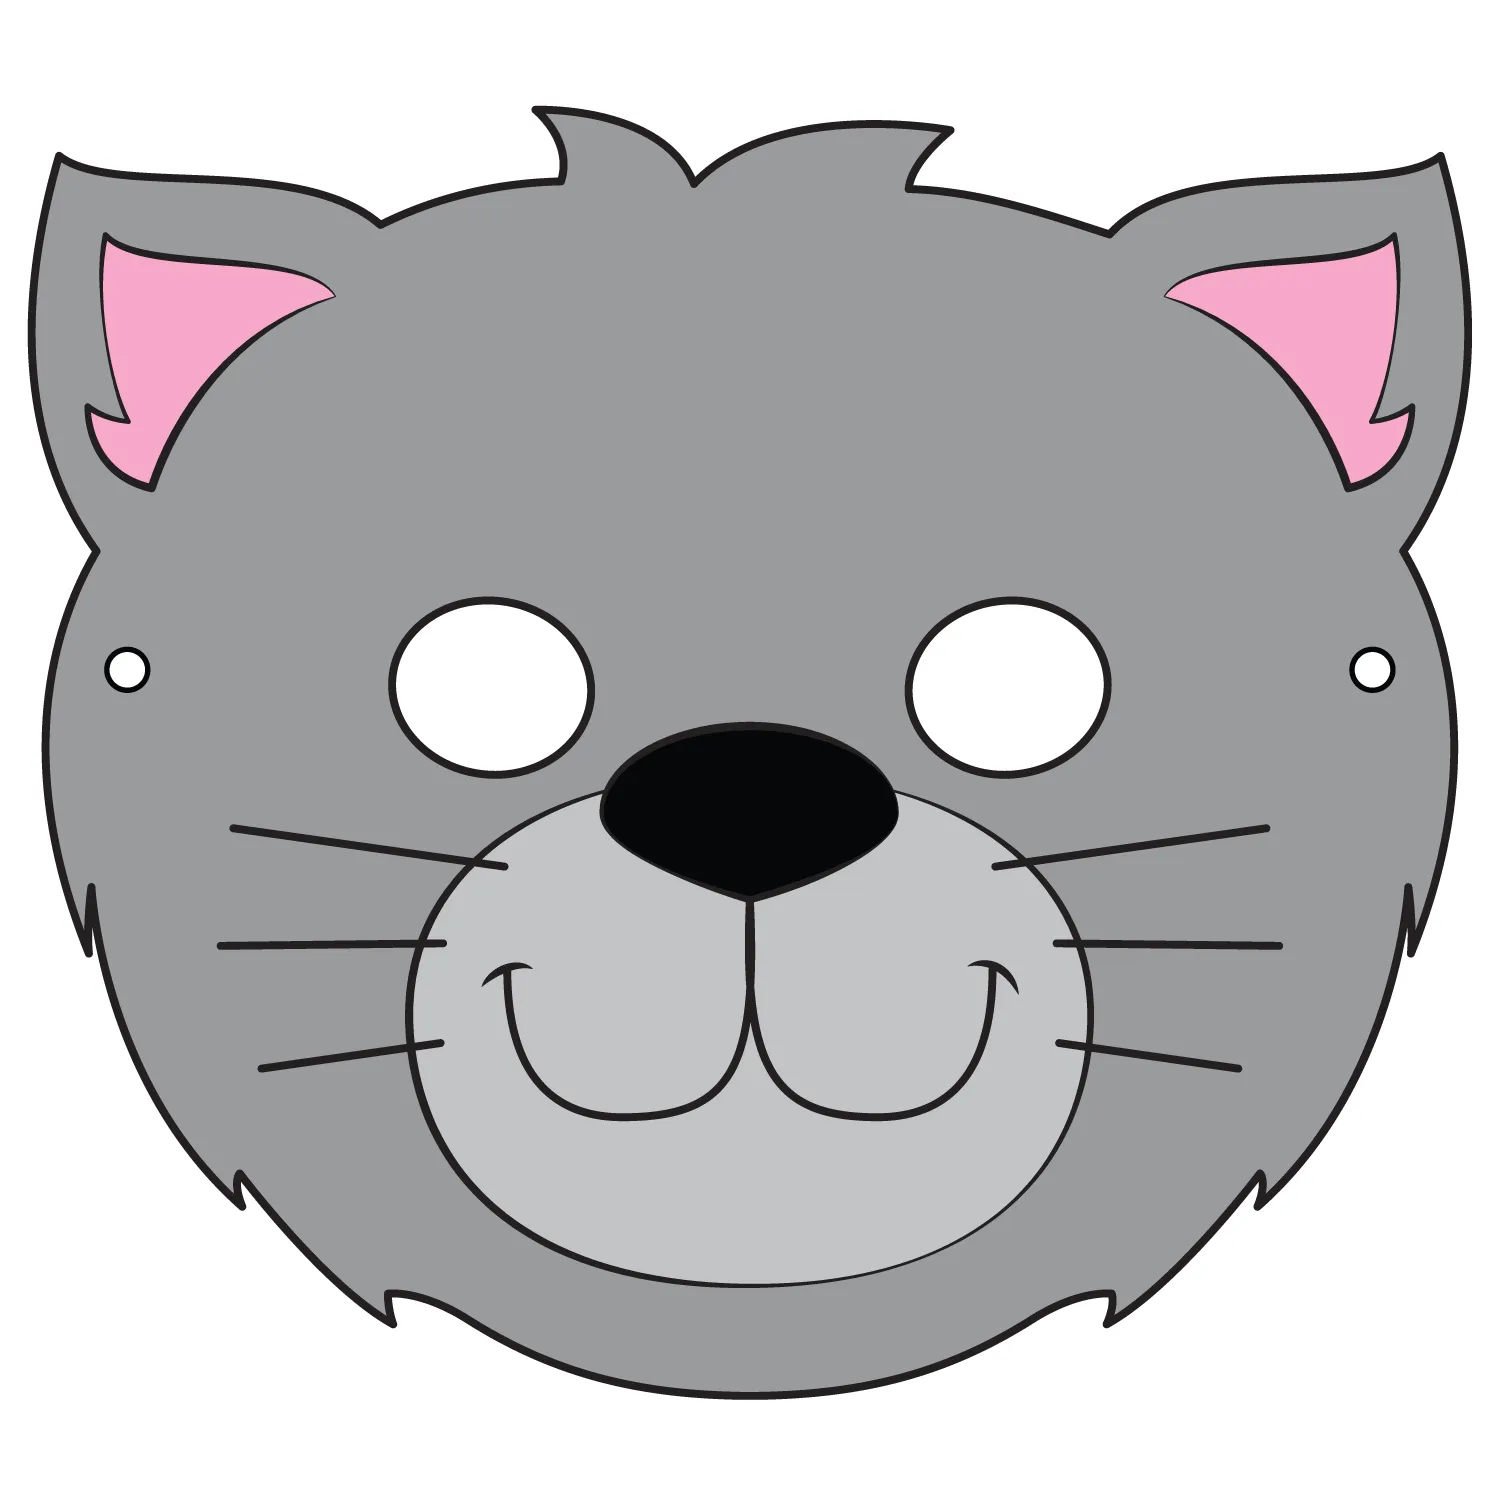 Plantilla de Máscara de Gato | Manualidades de papel para niños